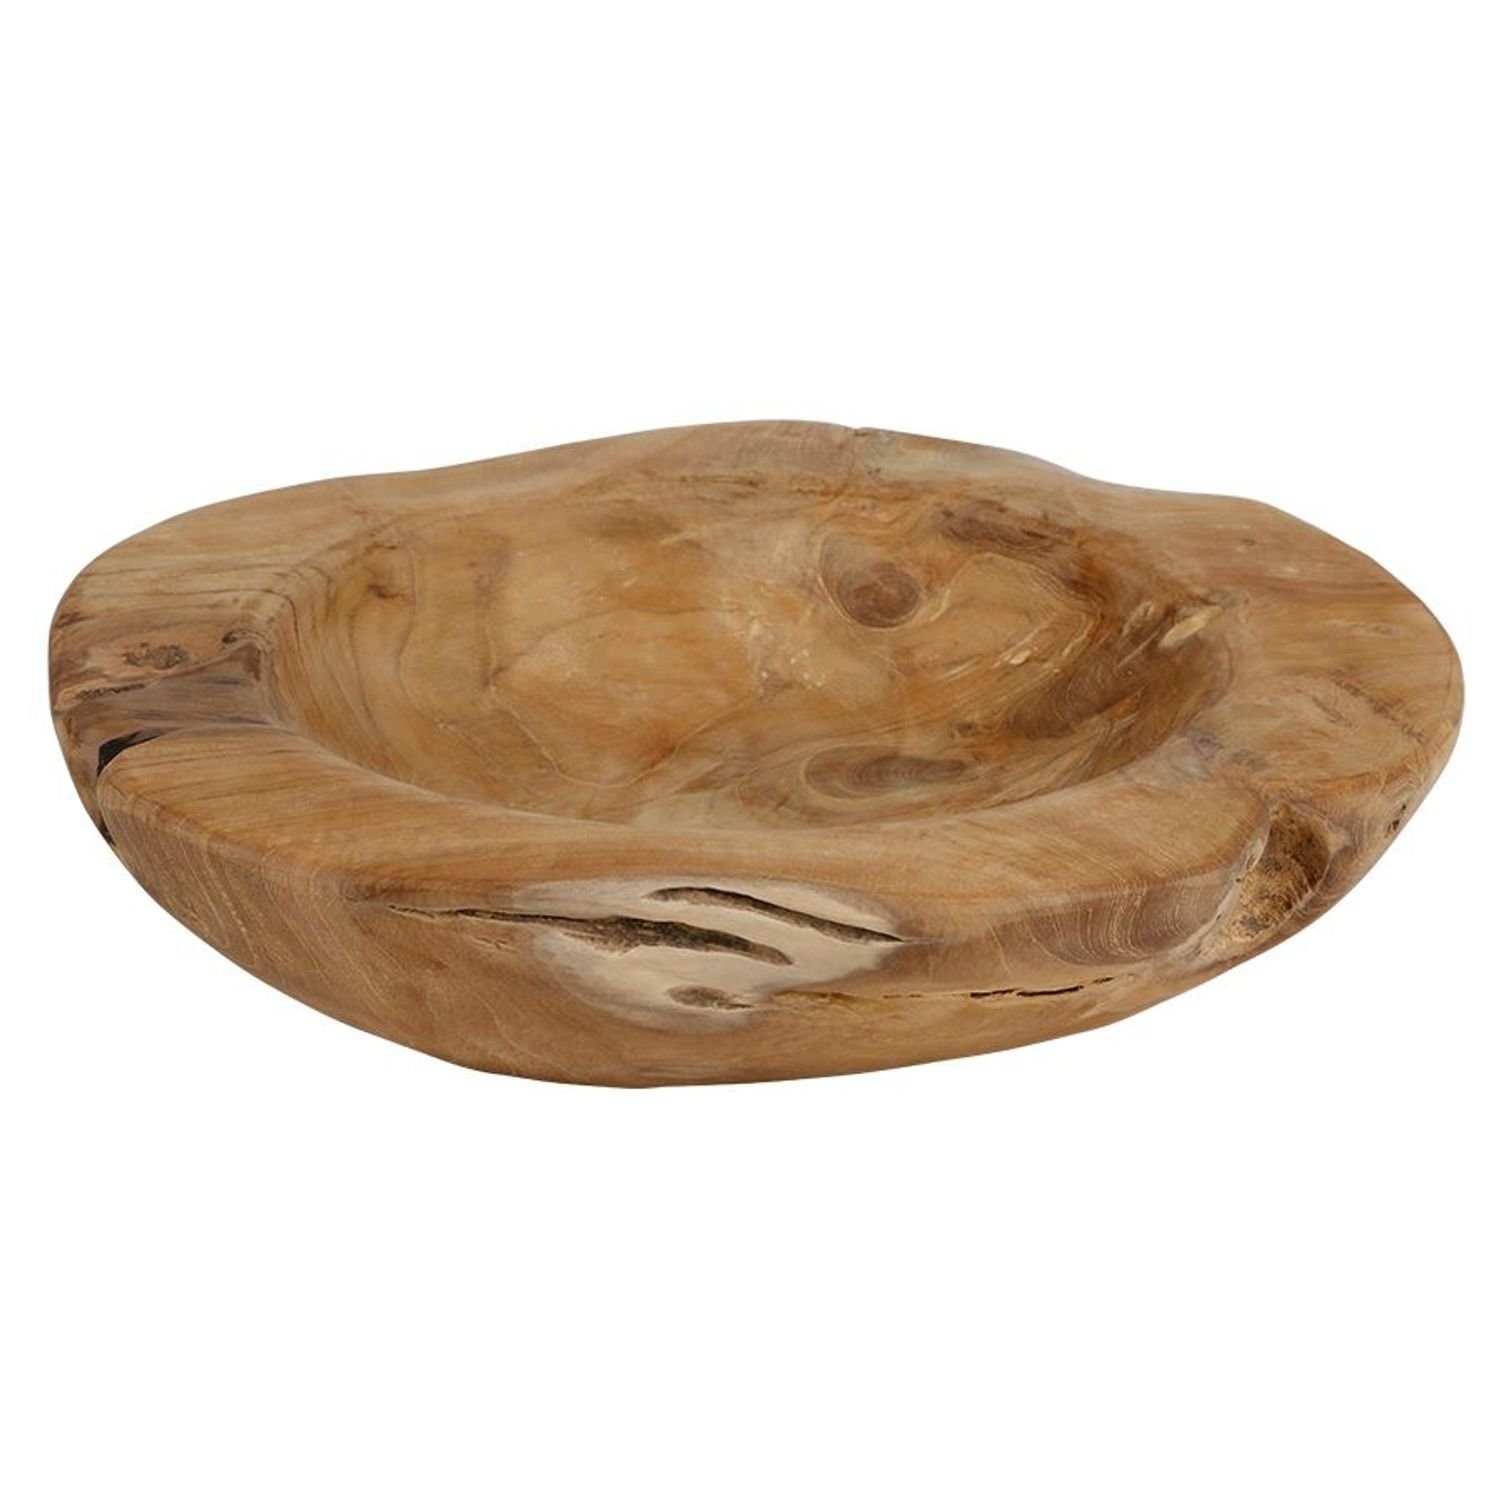 Beliebt und ausverkauft BURI Schale Rustikale Teakholzschale 27-30cm Schüssel Deko Holz Holz Naturprodukt